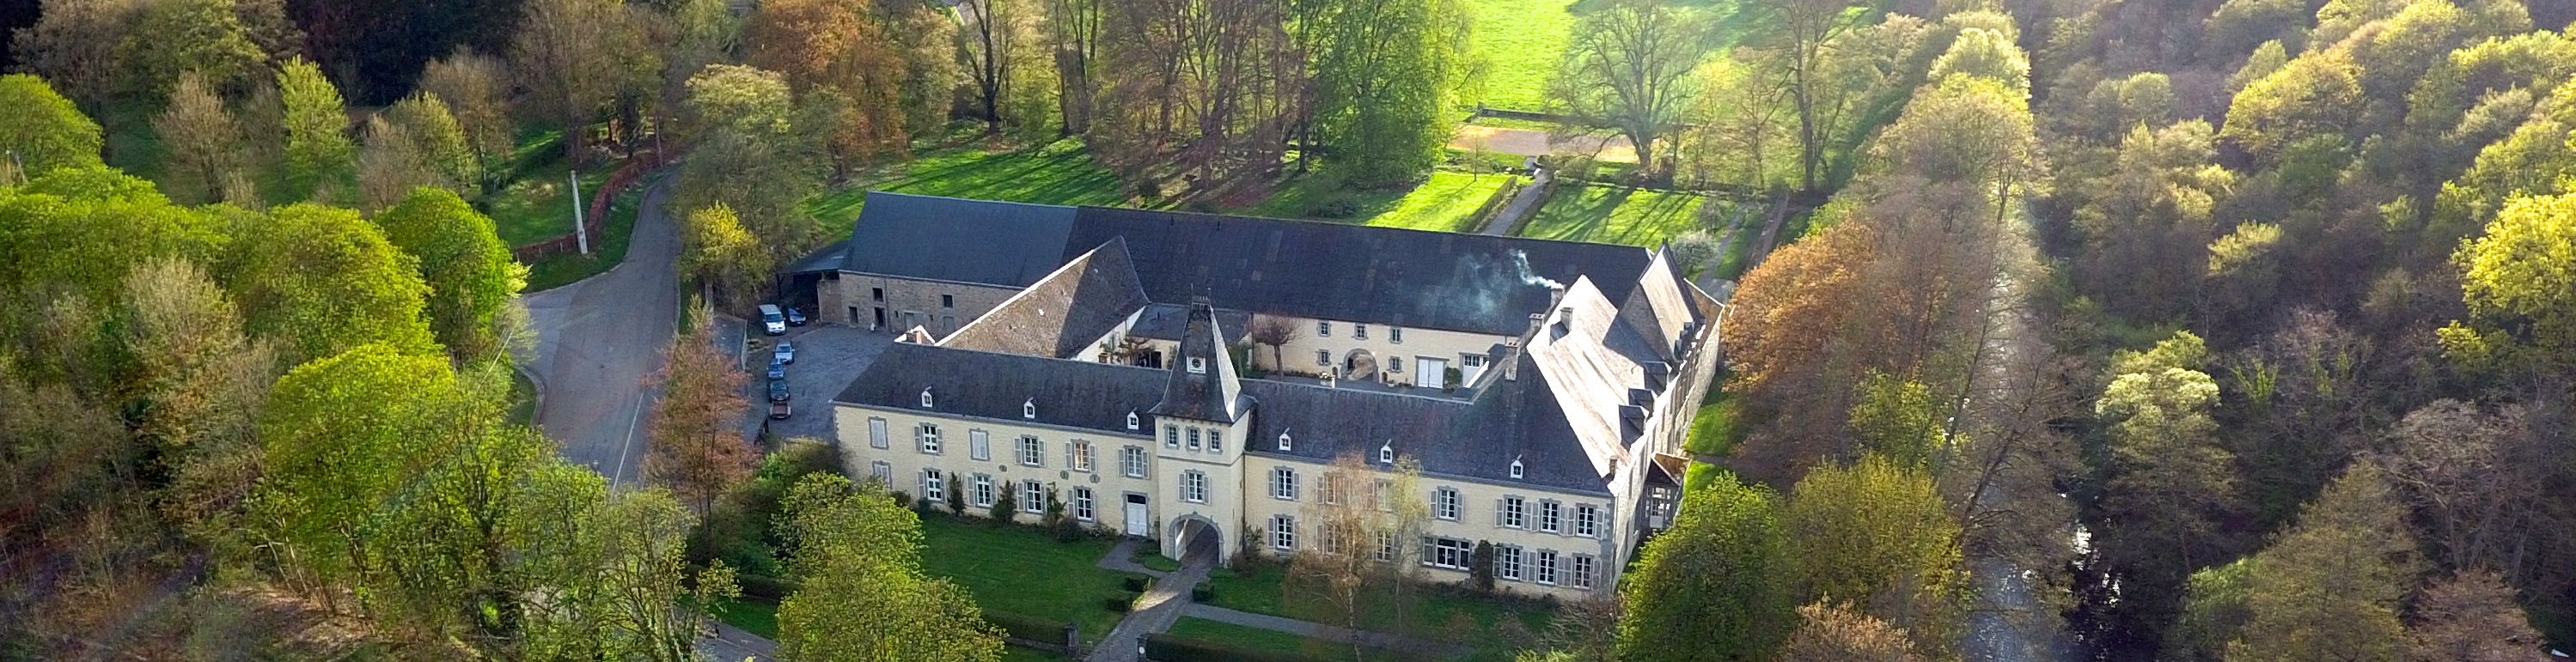 Château de Resteigne, Château mariage Belgique, Luxembourg